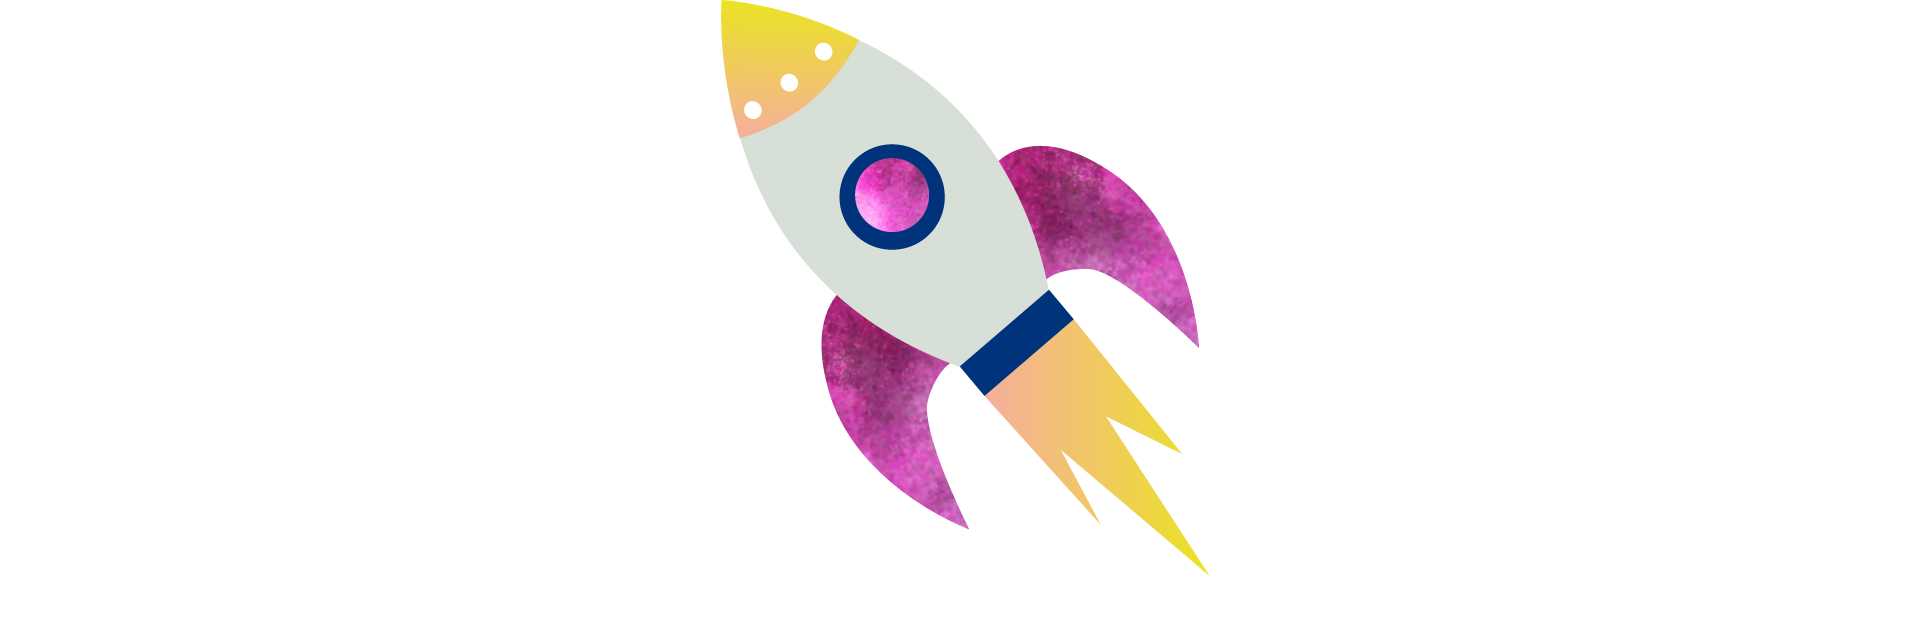 Raket logo